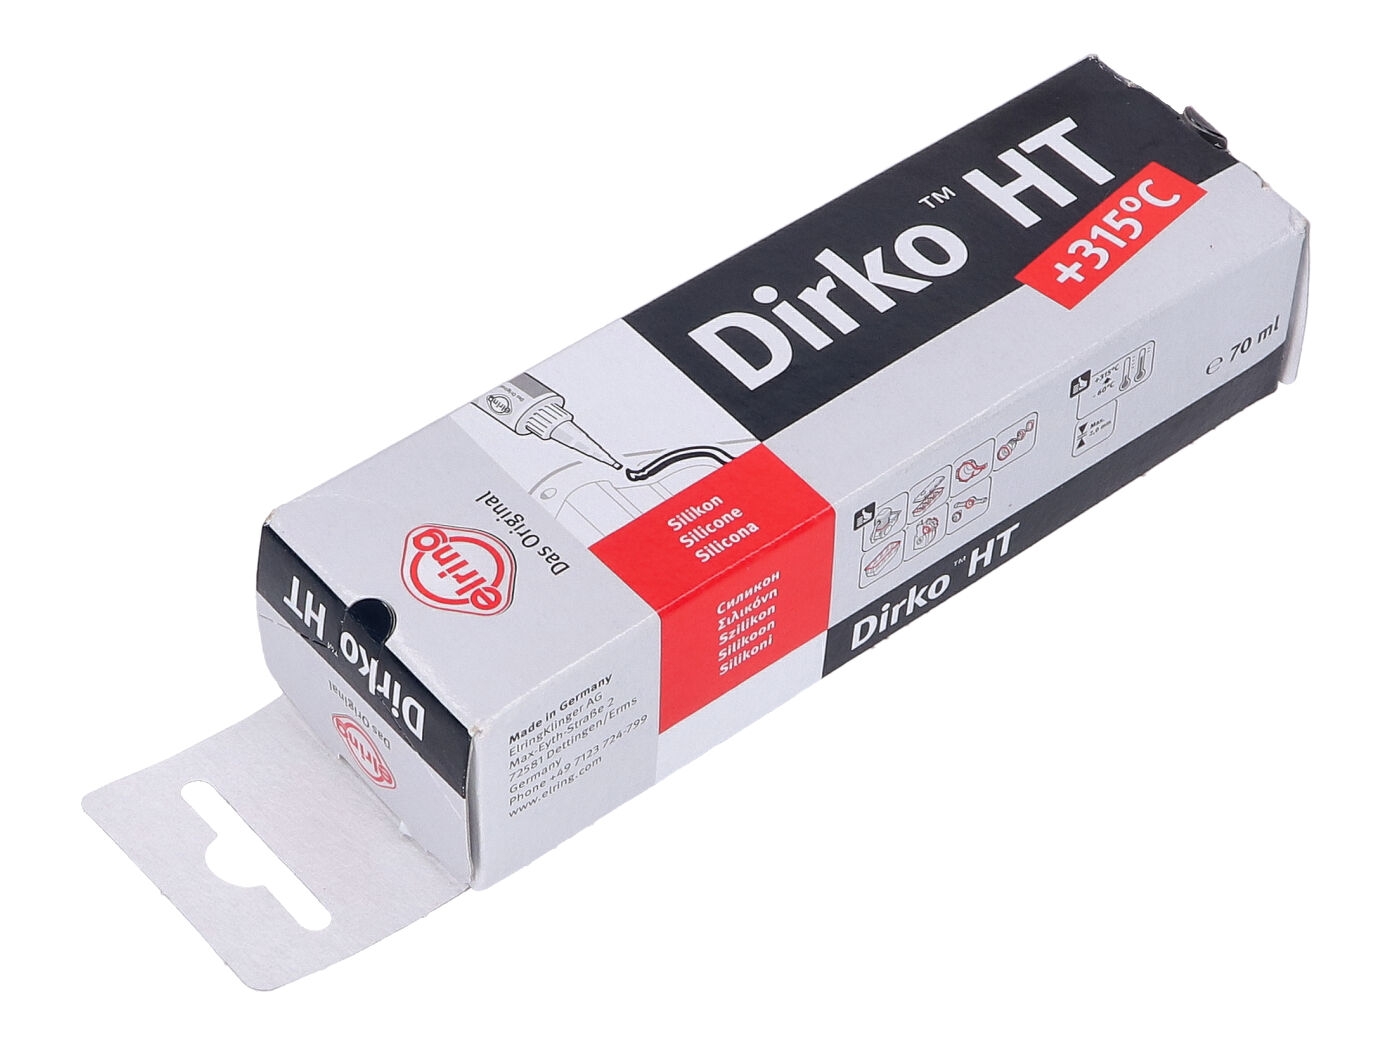 Dichtmasse Dirko HT online kaufen